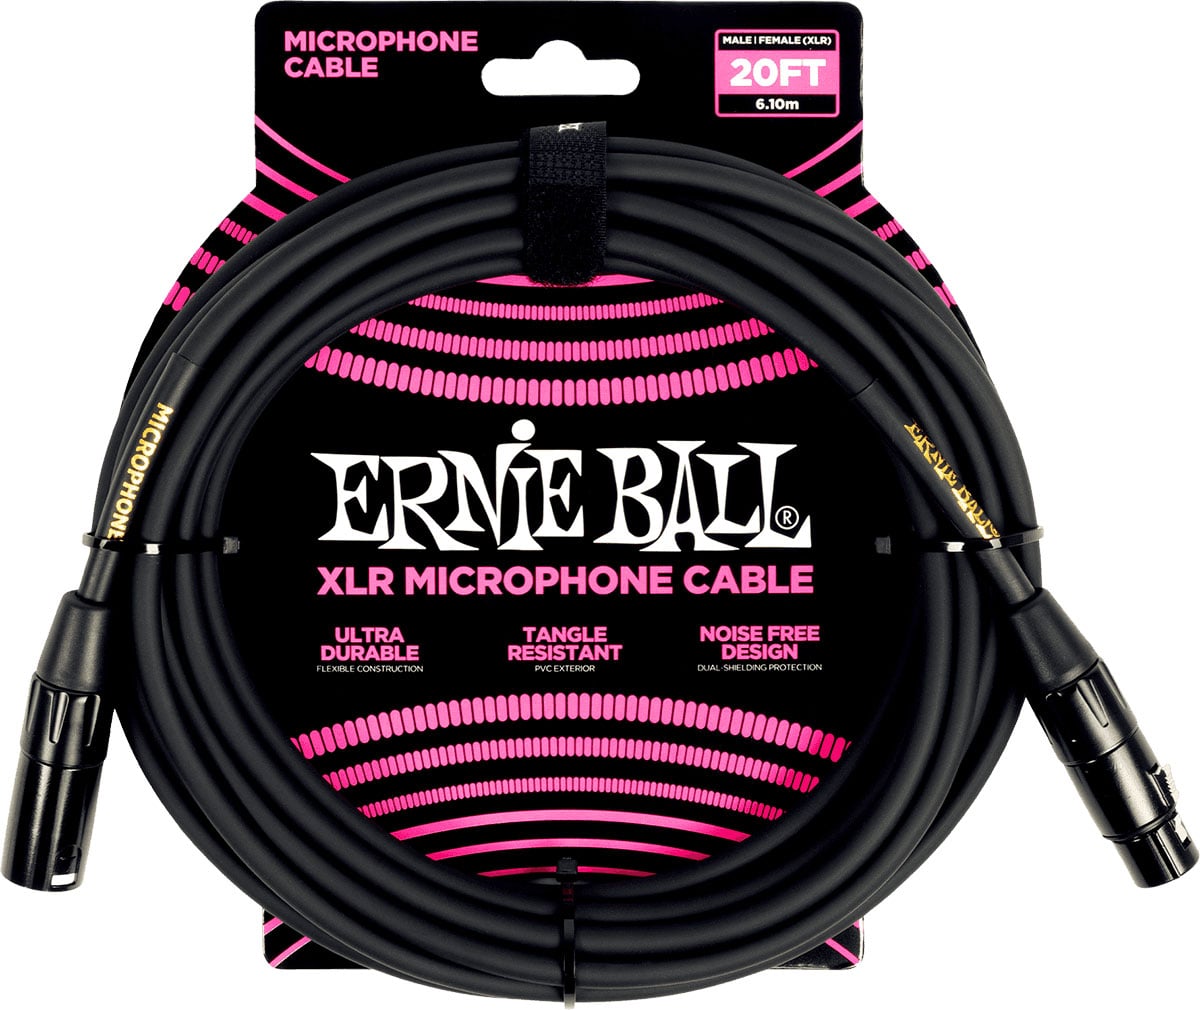 ERNIE BALL CBLES MICROPHONE CLASSIC XLR MLE/XLR FEM 6M NOIR